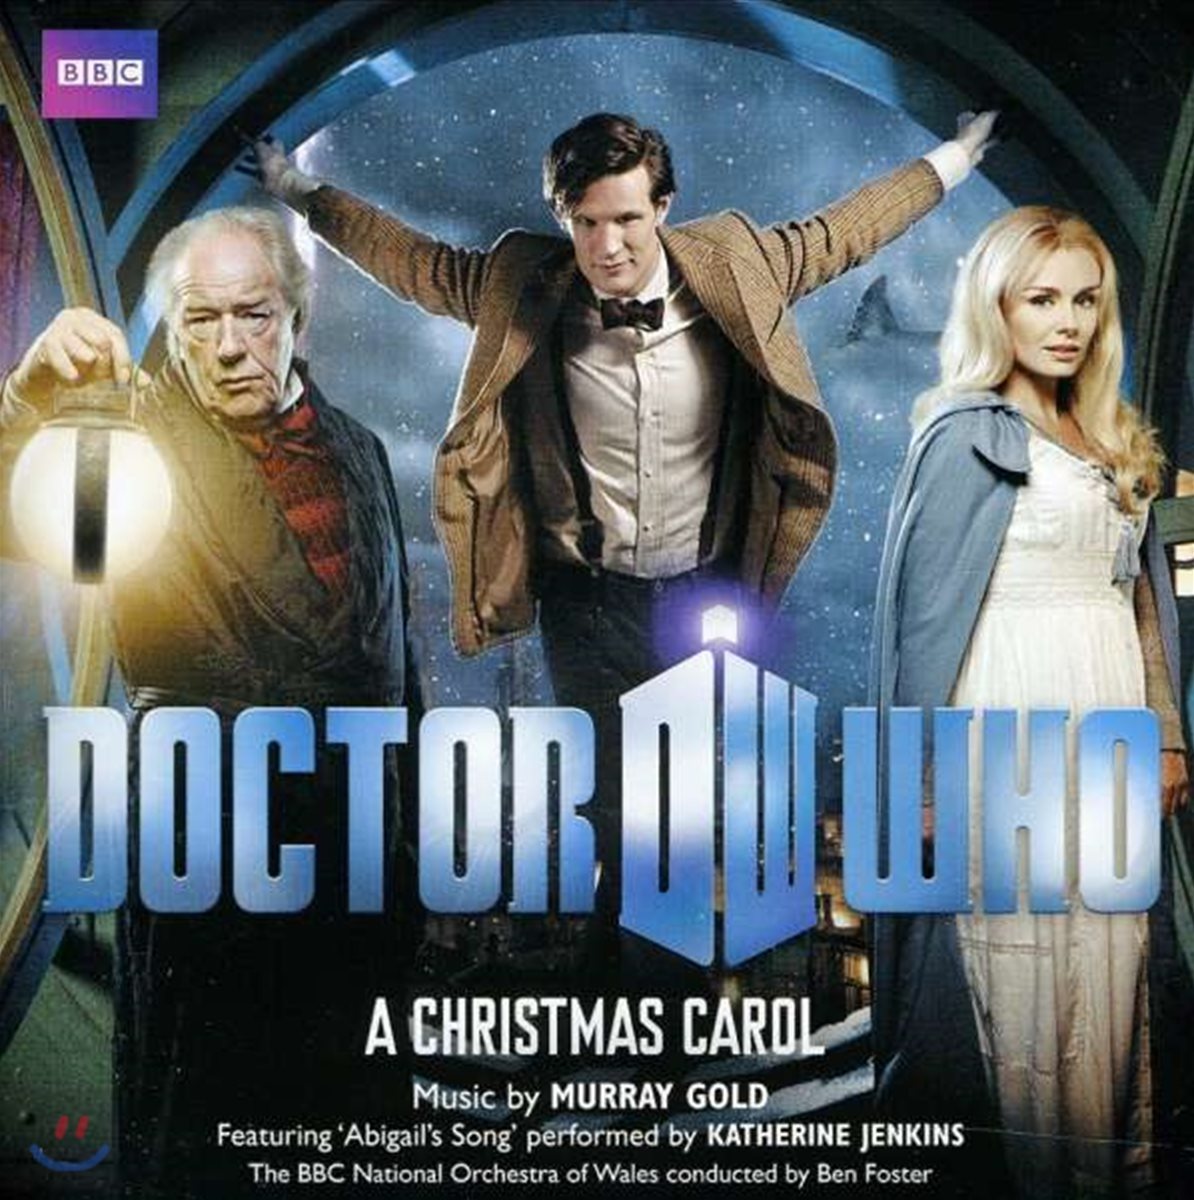 BBC 닥터 후 크리스마스 캐롤 드라마음악 (Doctor Who: A Christmas Carol by Murray Gold)